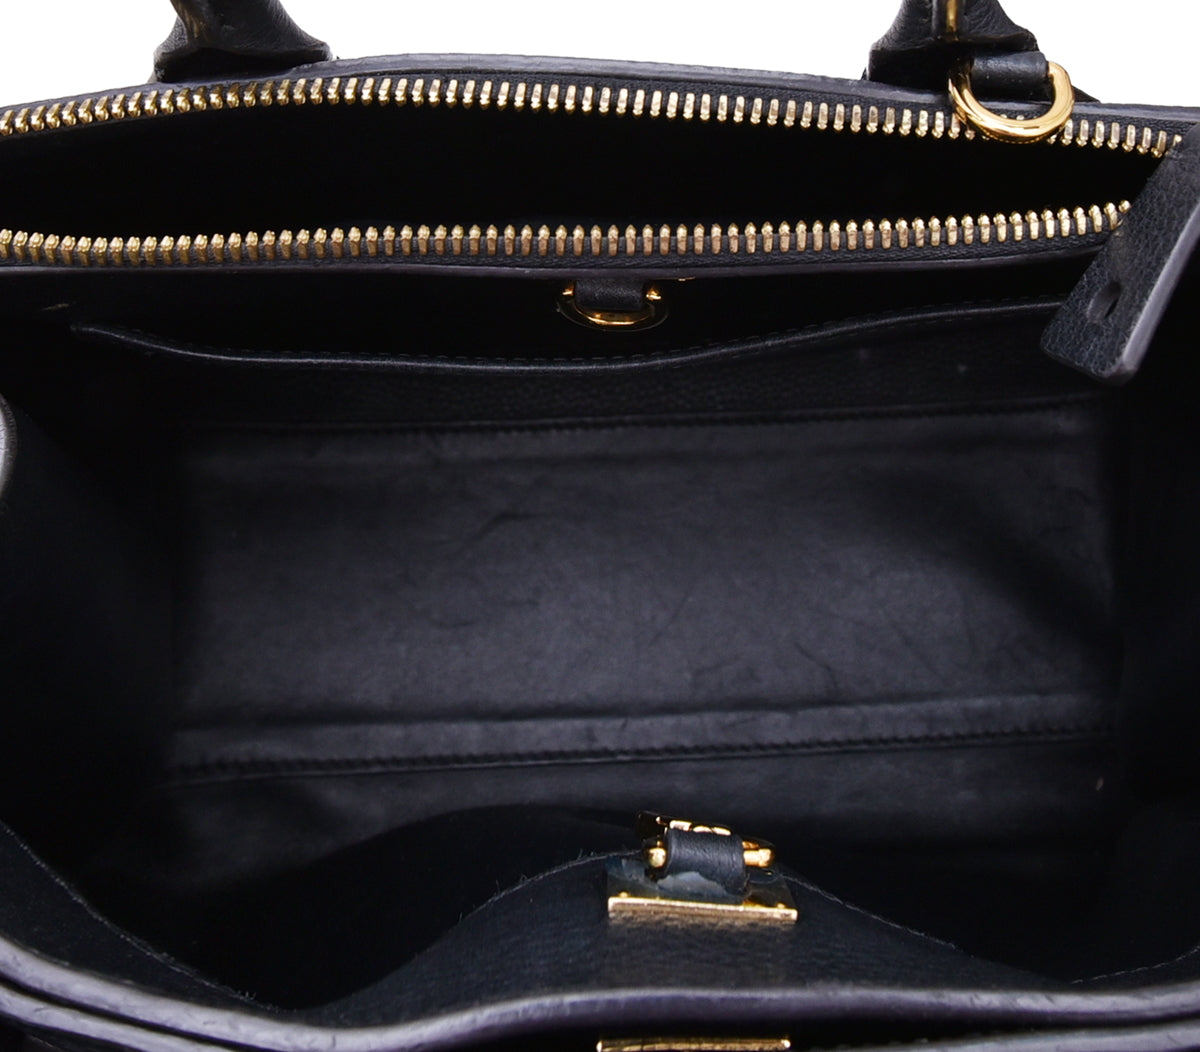 Louis Vuitton Black Leather City Steamer PM Bag Louis Vuitton